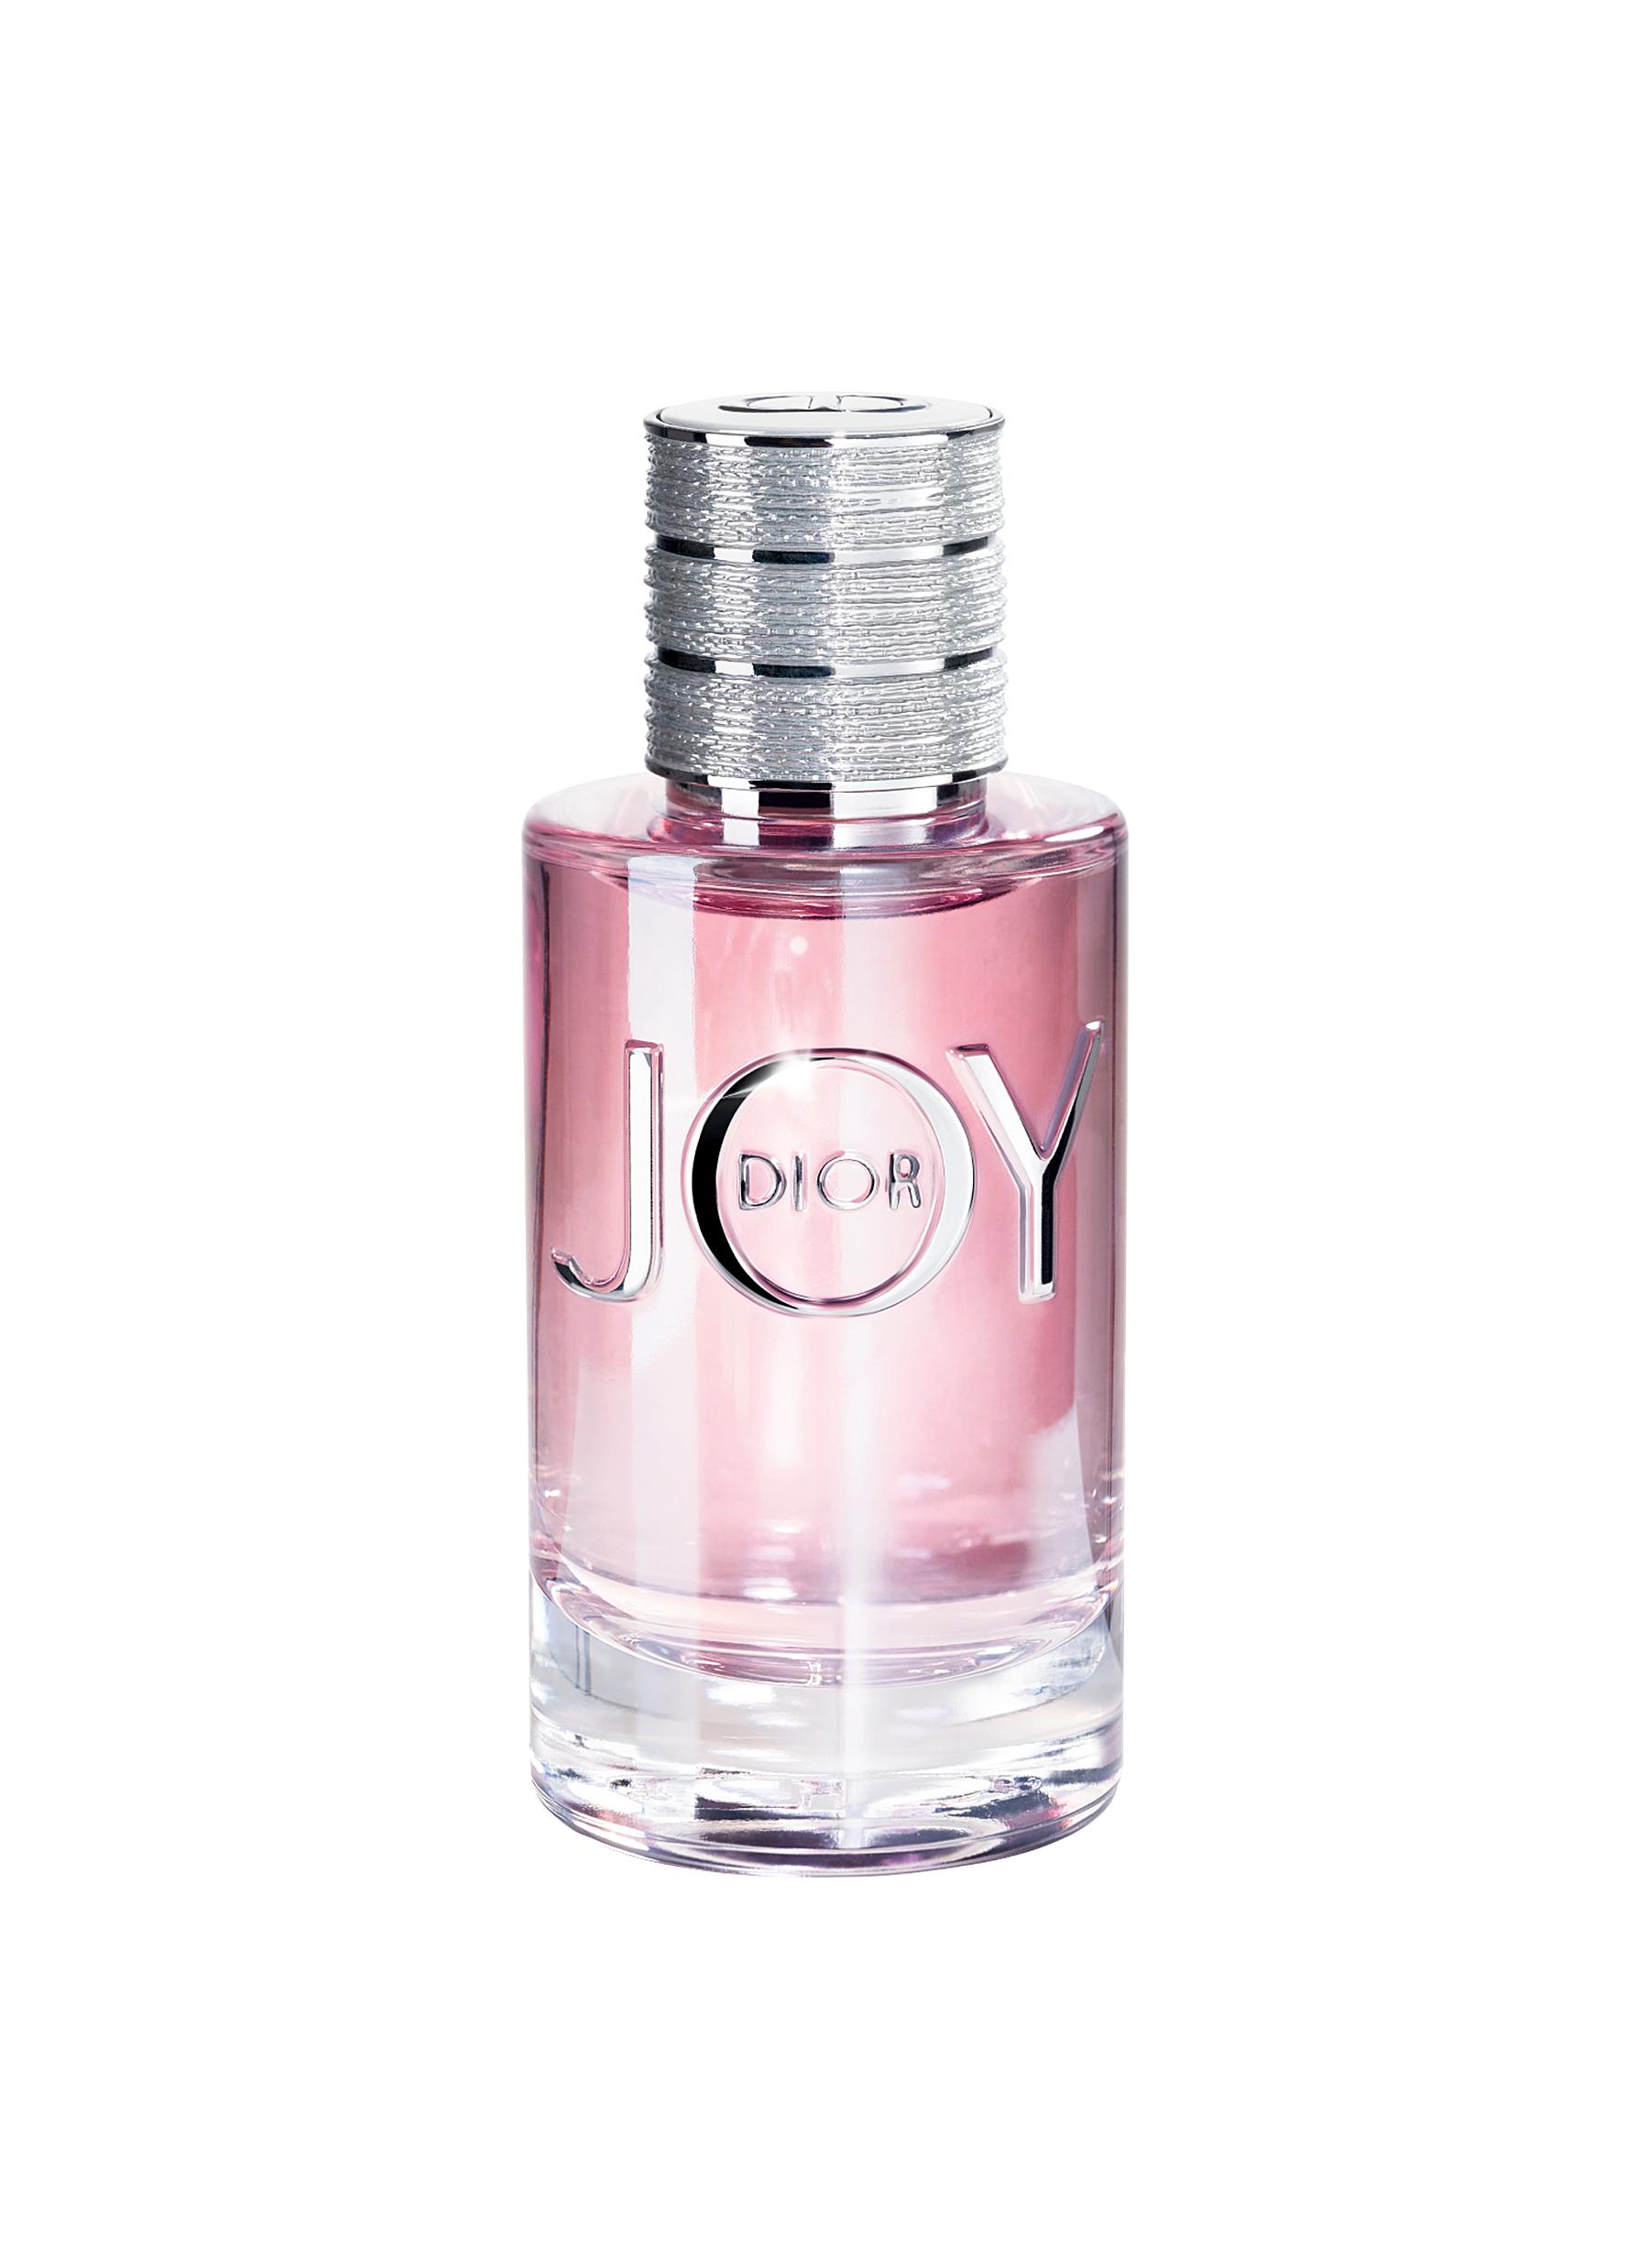 joy by dior eau de parfum 30ml